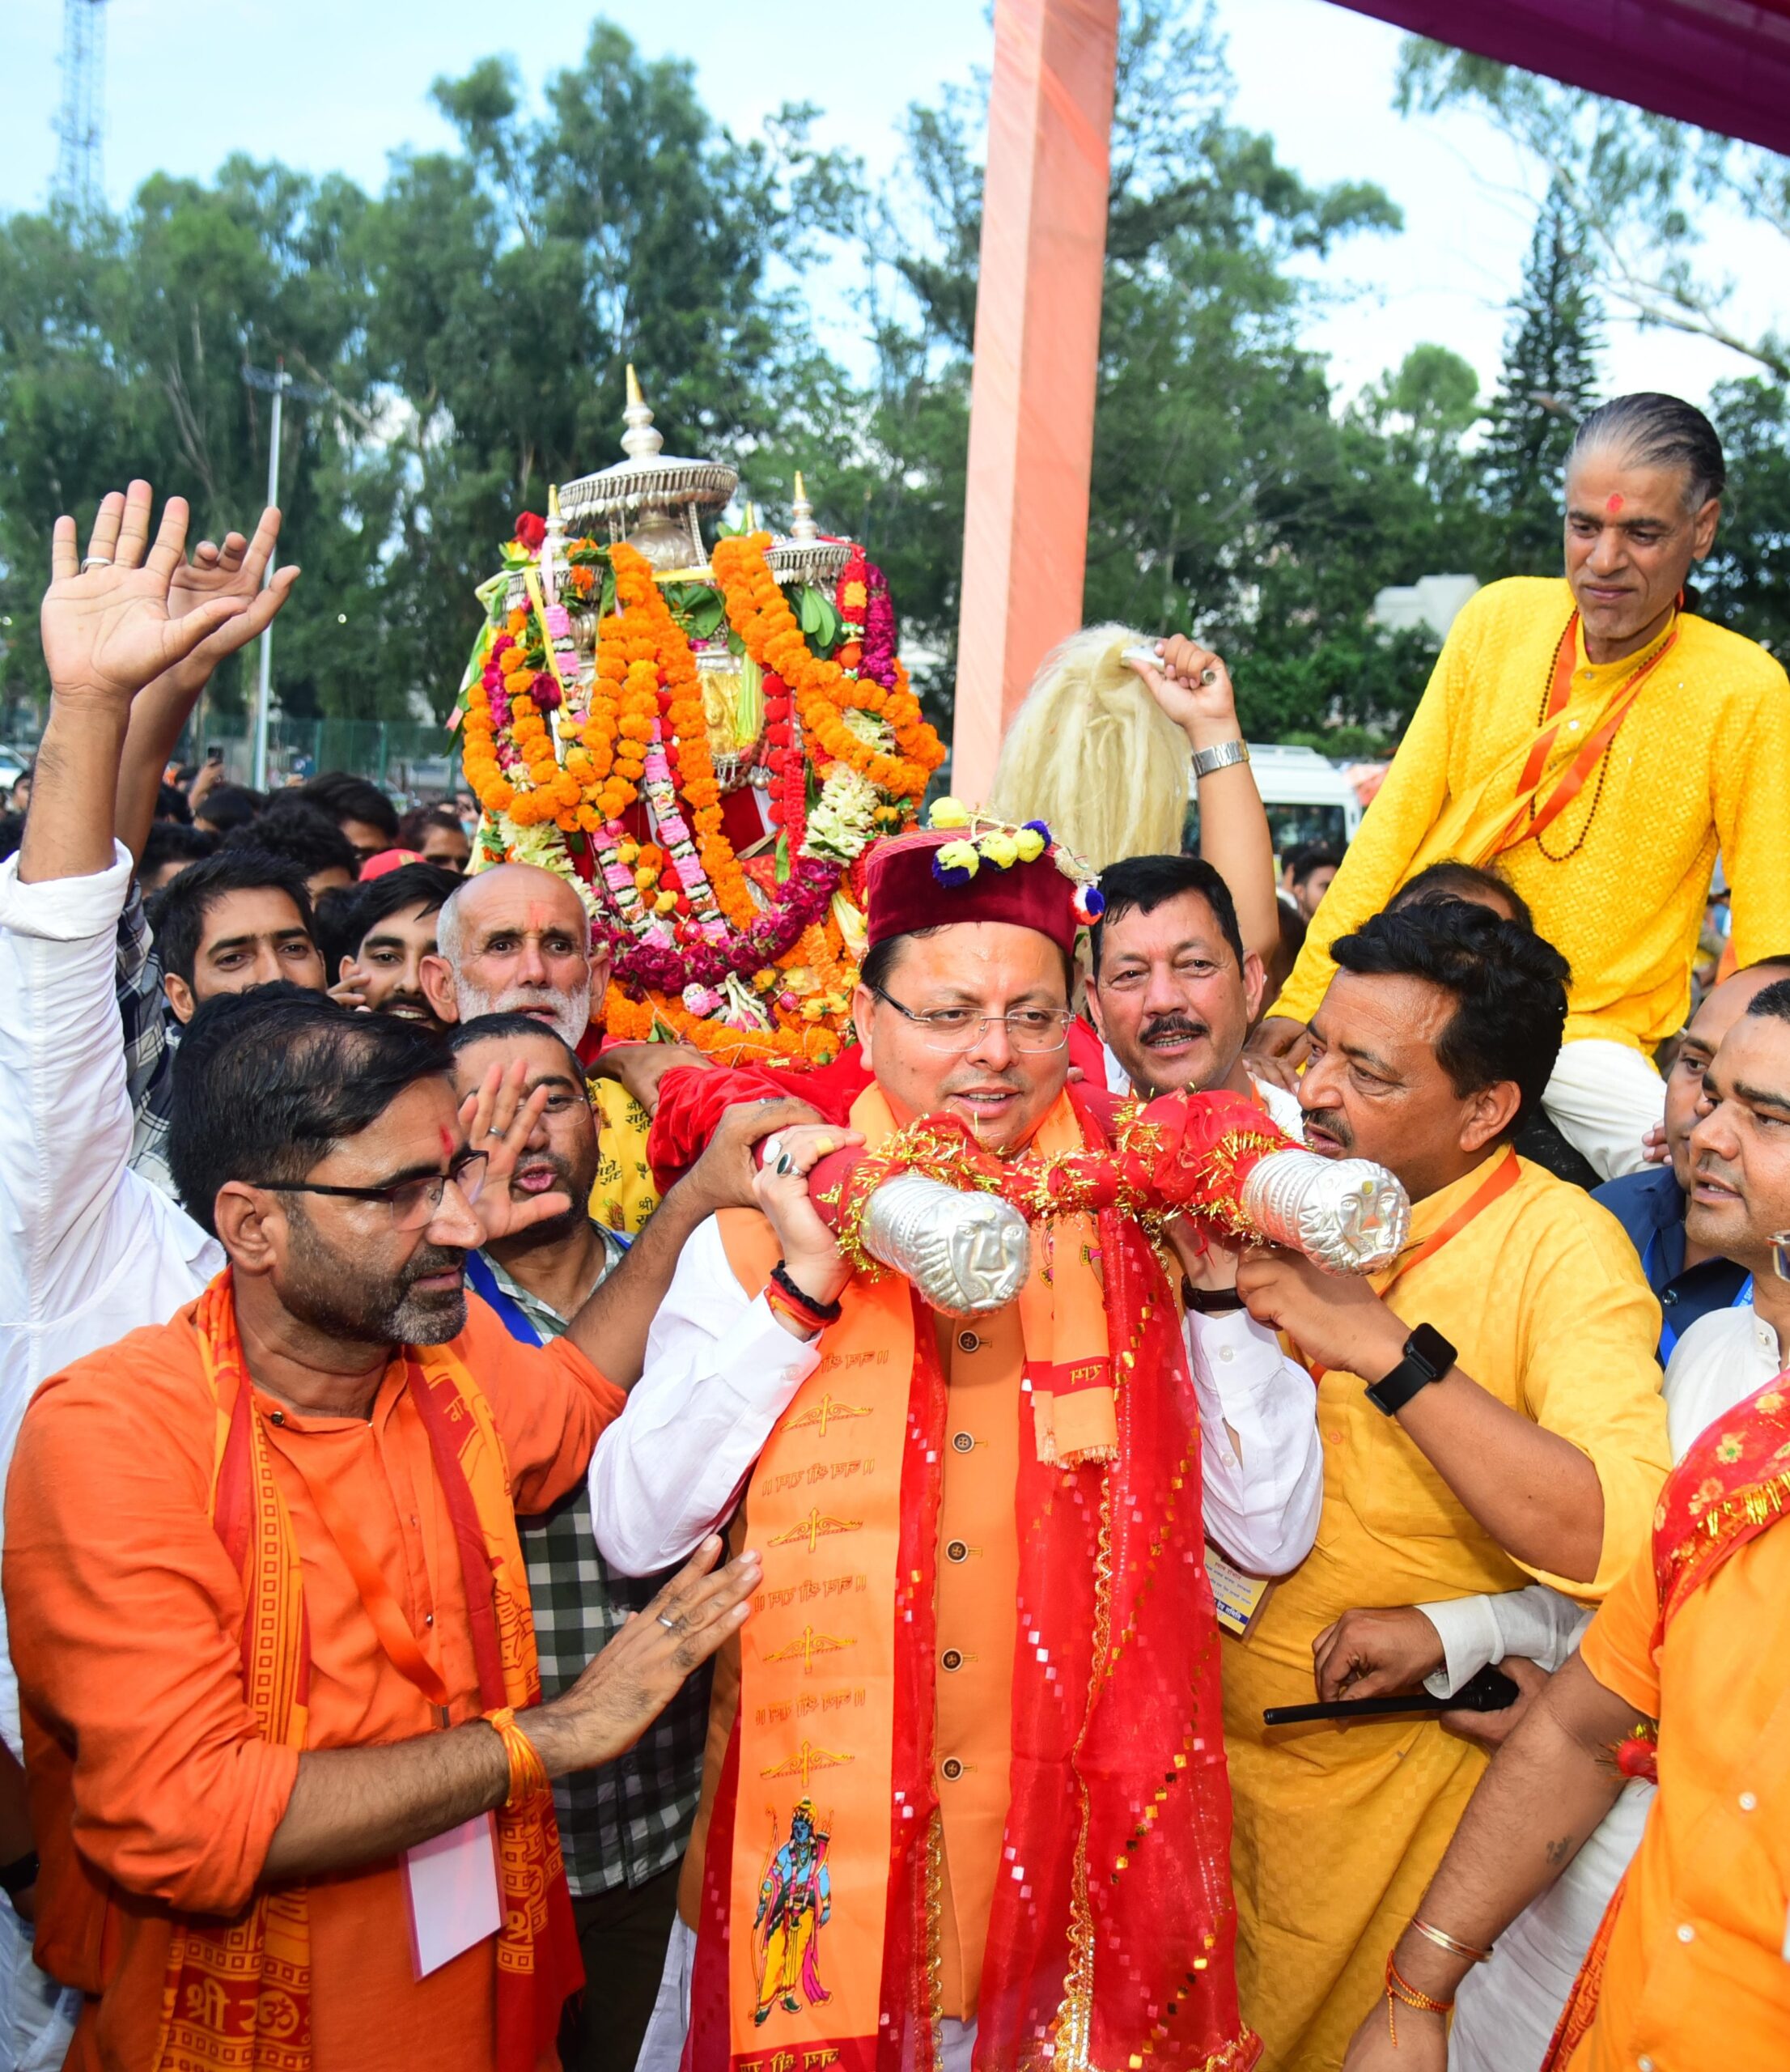 मुख्यमंत्री ने परेड ग्राउंड, देहरादून में आयोजित कार्यक्रम में बाबा बौखनाग की पूजा-अर्चना कर प्रदेश की खुशहाली की कामना की।